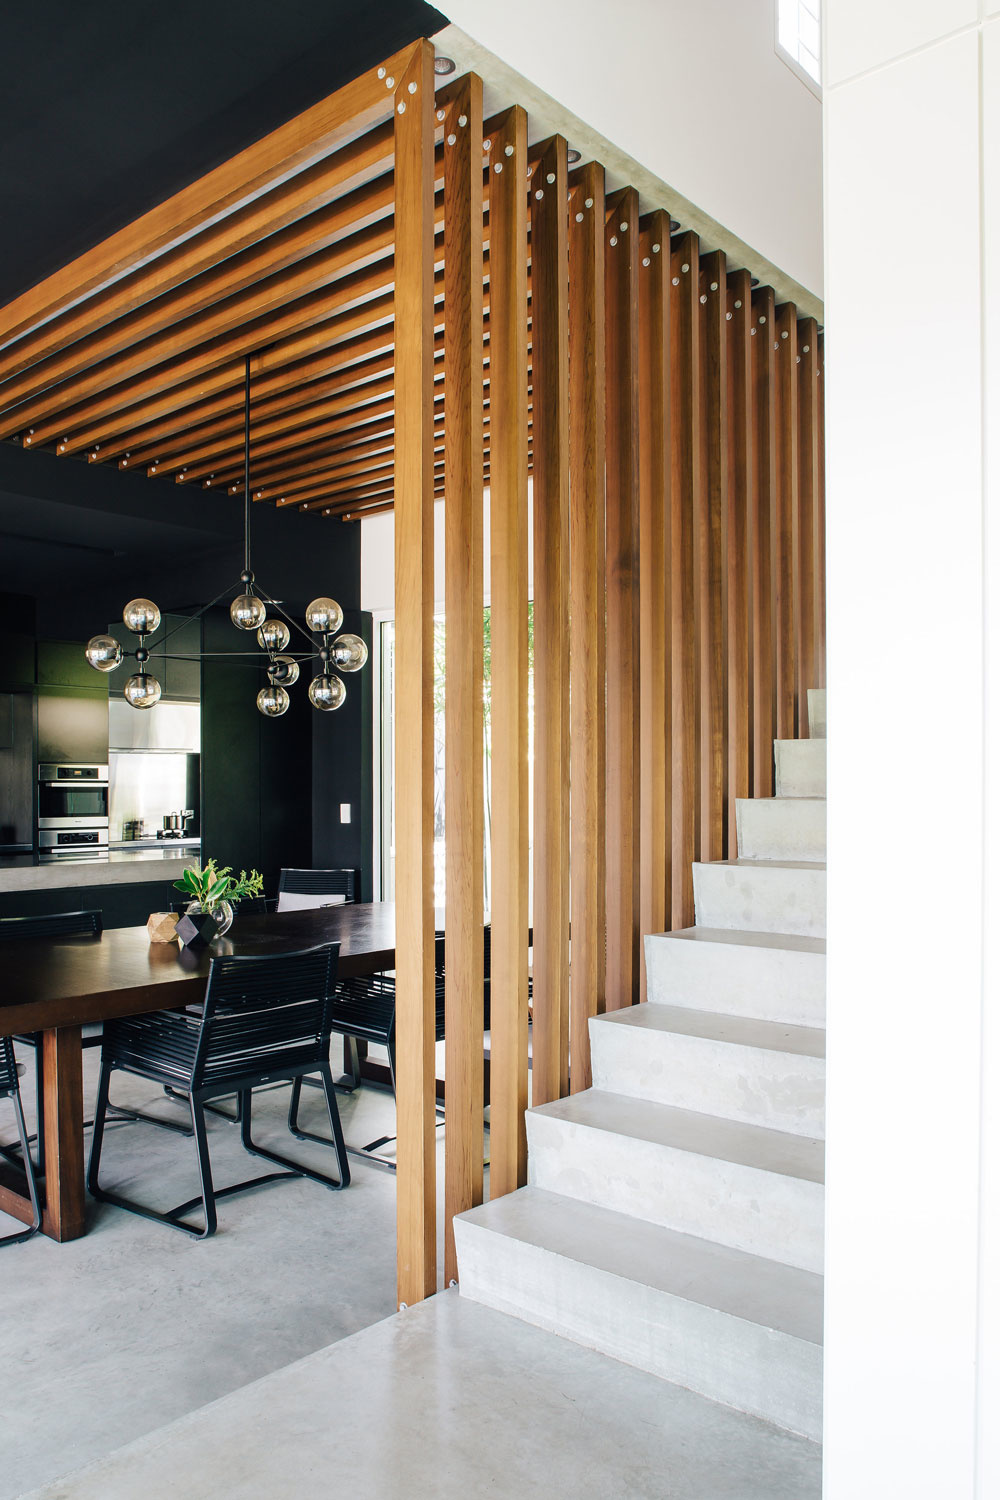 Ngôi nhà sử dụng gỗ tự nhiên sắc màu tuyệt đẹp, vừa tương phản với màu đen trong phòng bếp vừa hài hòa với những bậc tam cấp màu trắng của cầu thang. Những thanh gỗ bao phủ từ trần nhà đồng thời thay thế lan can cho cái nhìn đẹp mắt, cá tính.